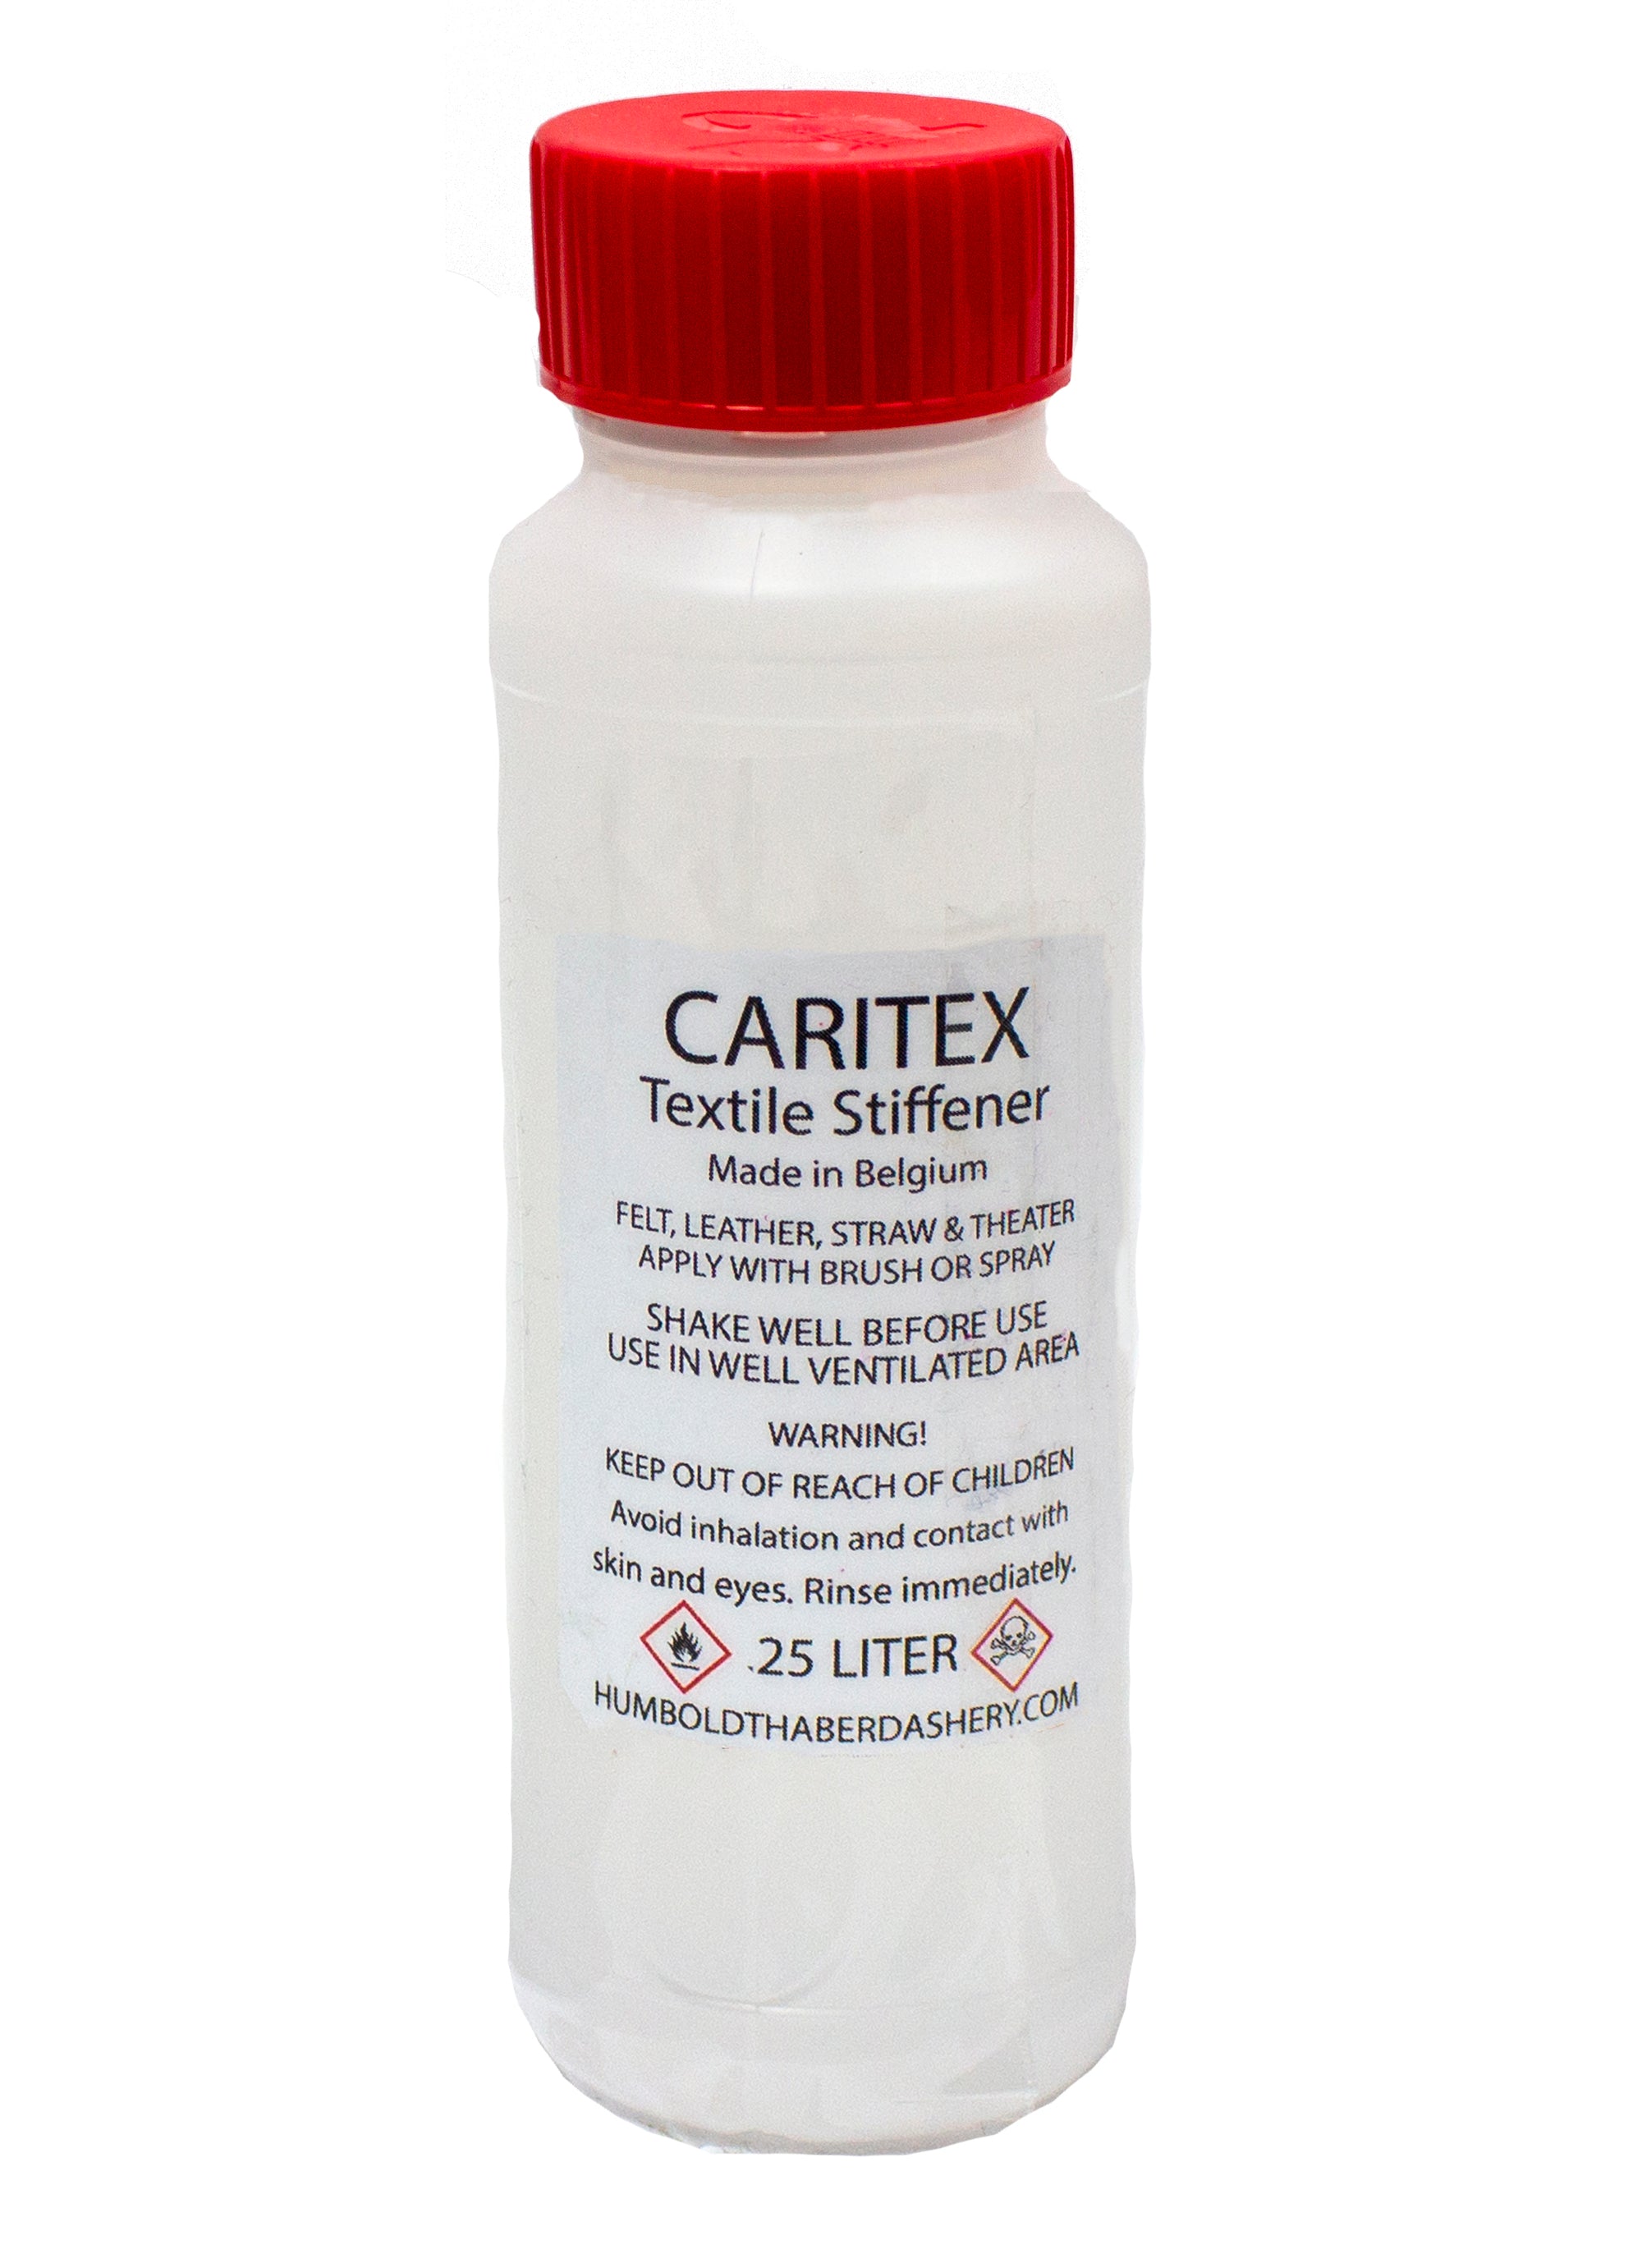 Caritex Textile Stiffener